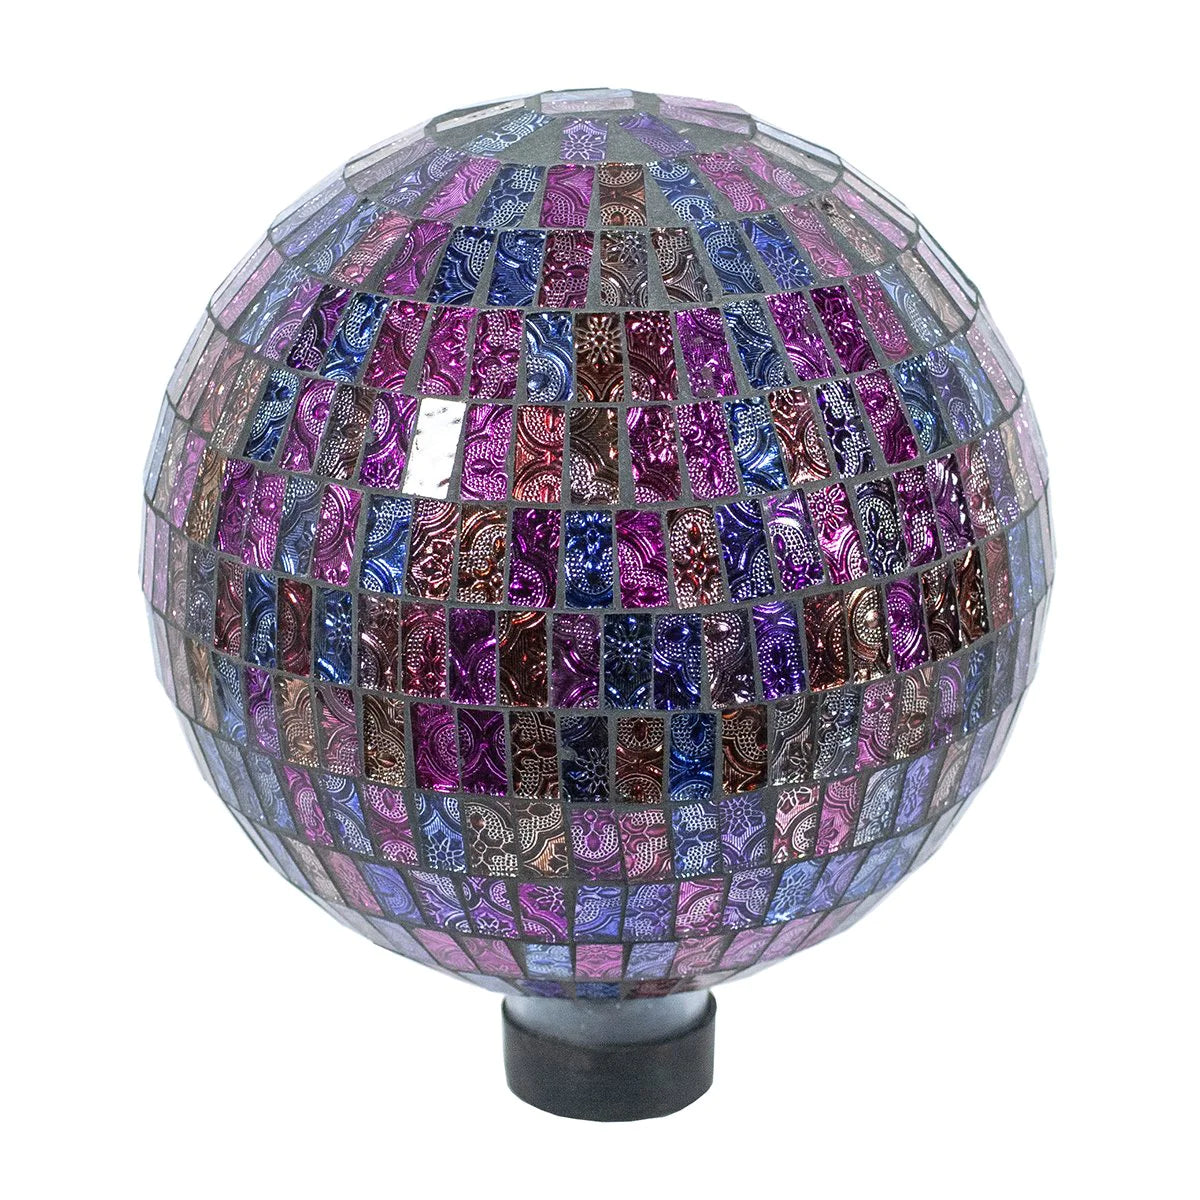 10" Parti-Colored Gazing Globe